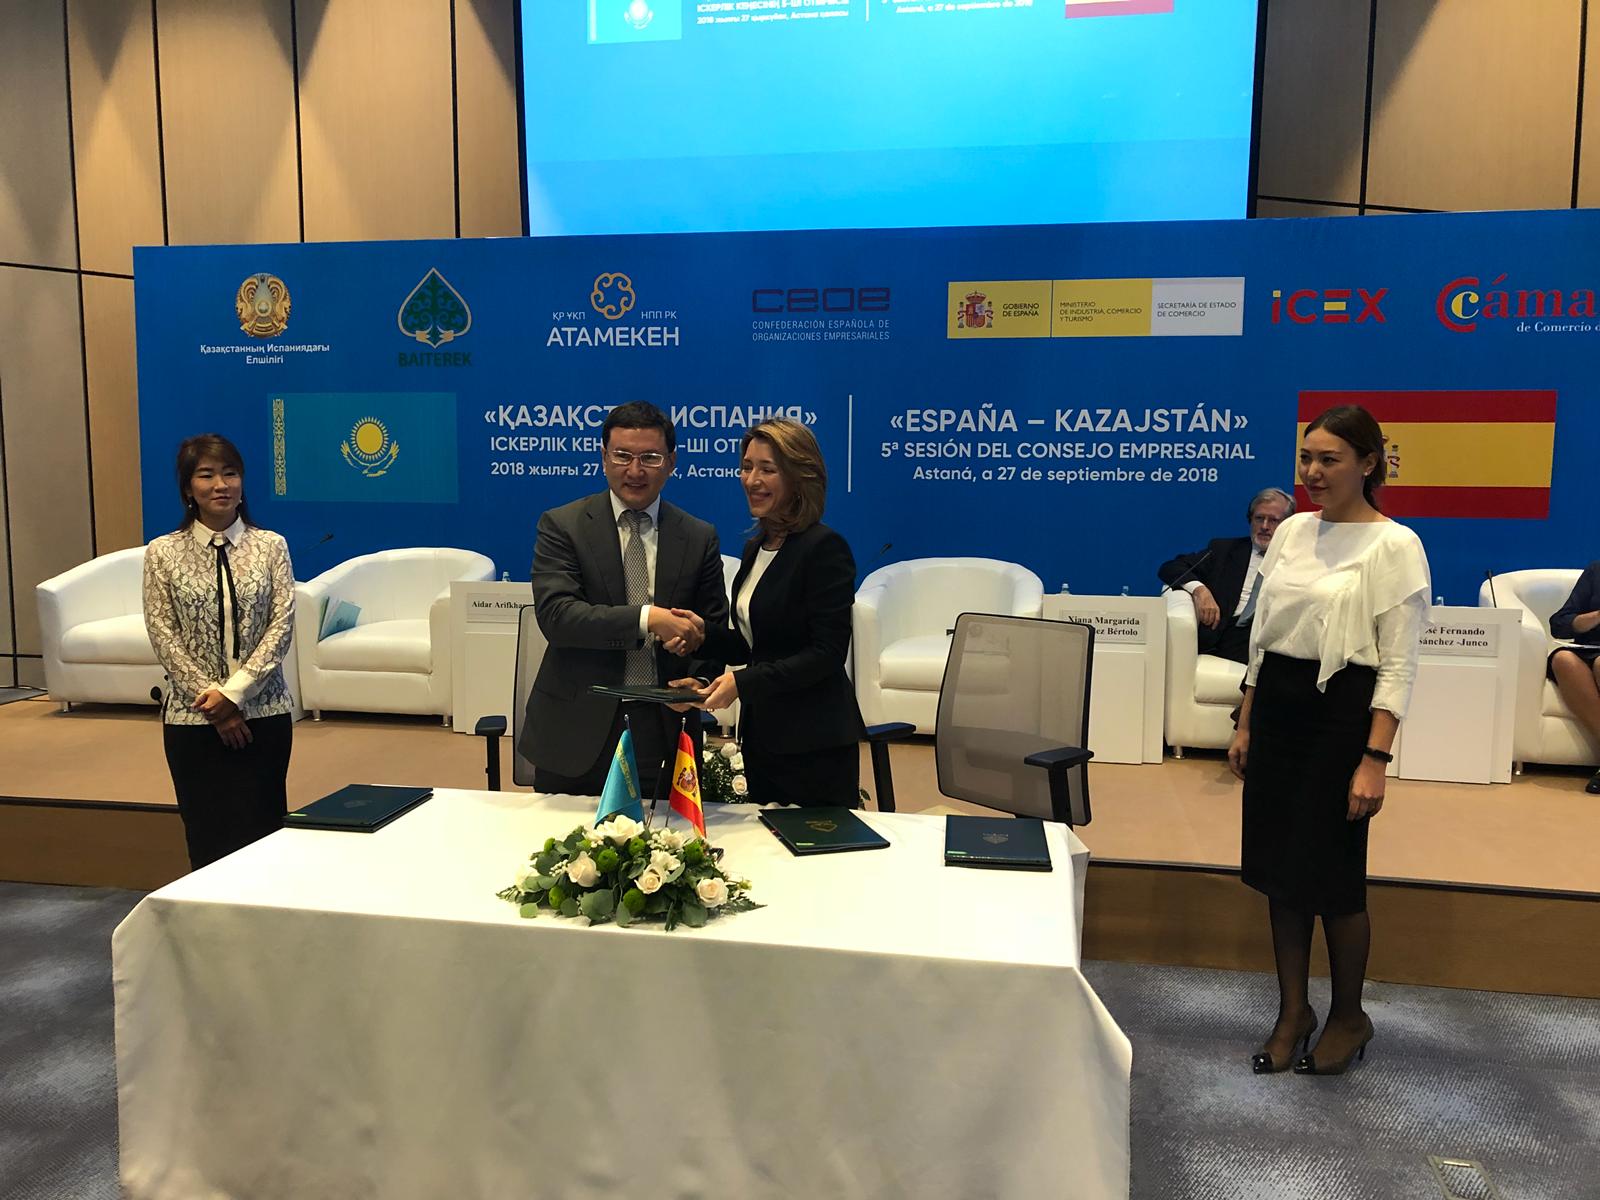 5º Consejo Empresarial España-Kazajstán